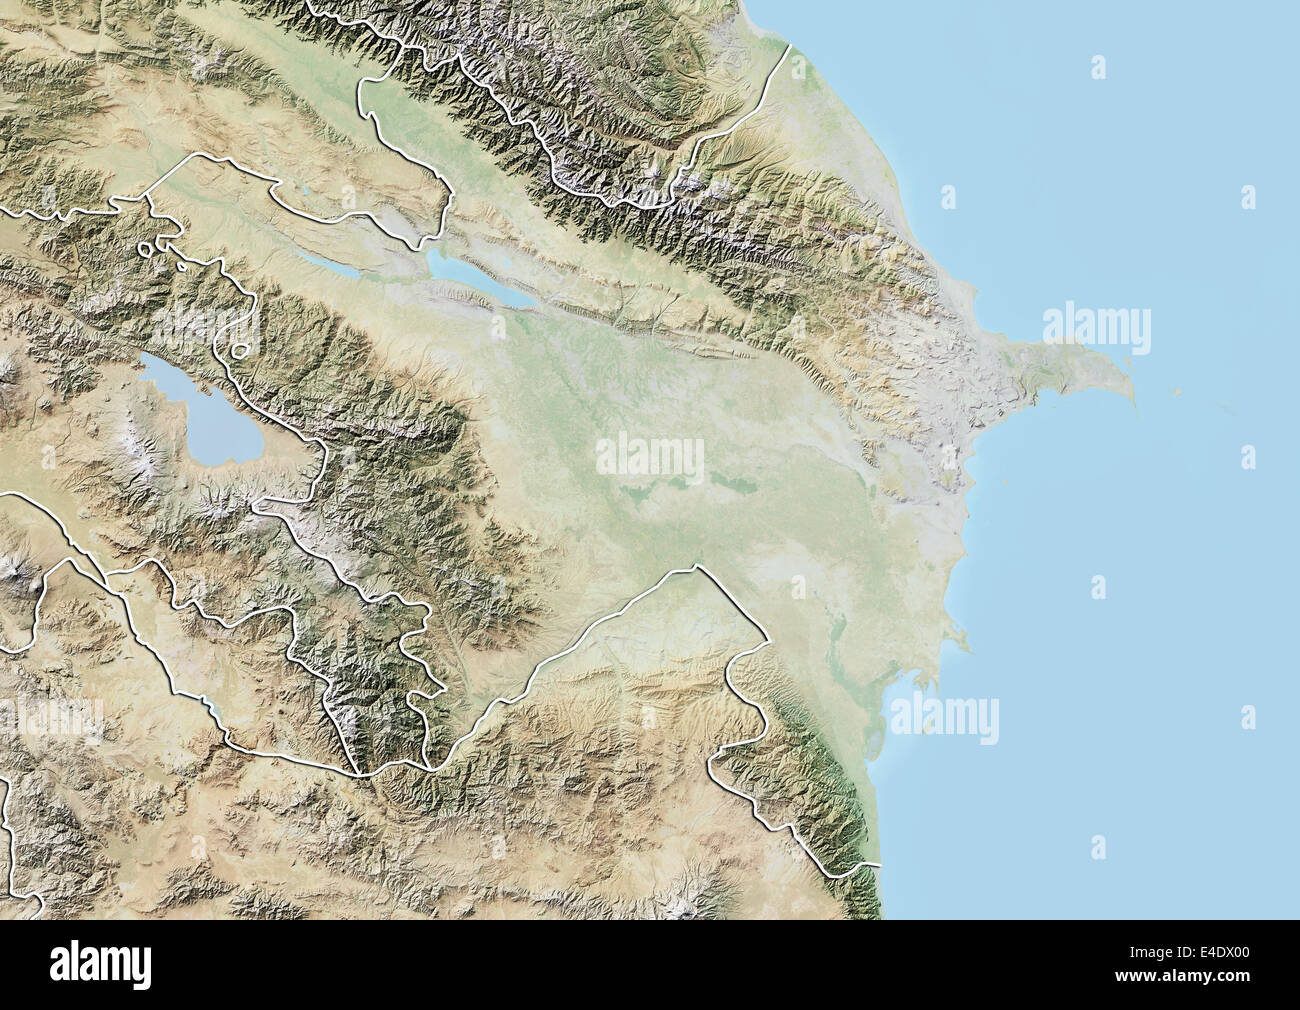 azerbaijan-relief-map-with-border-E4DX00.jpg